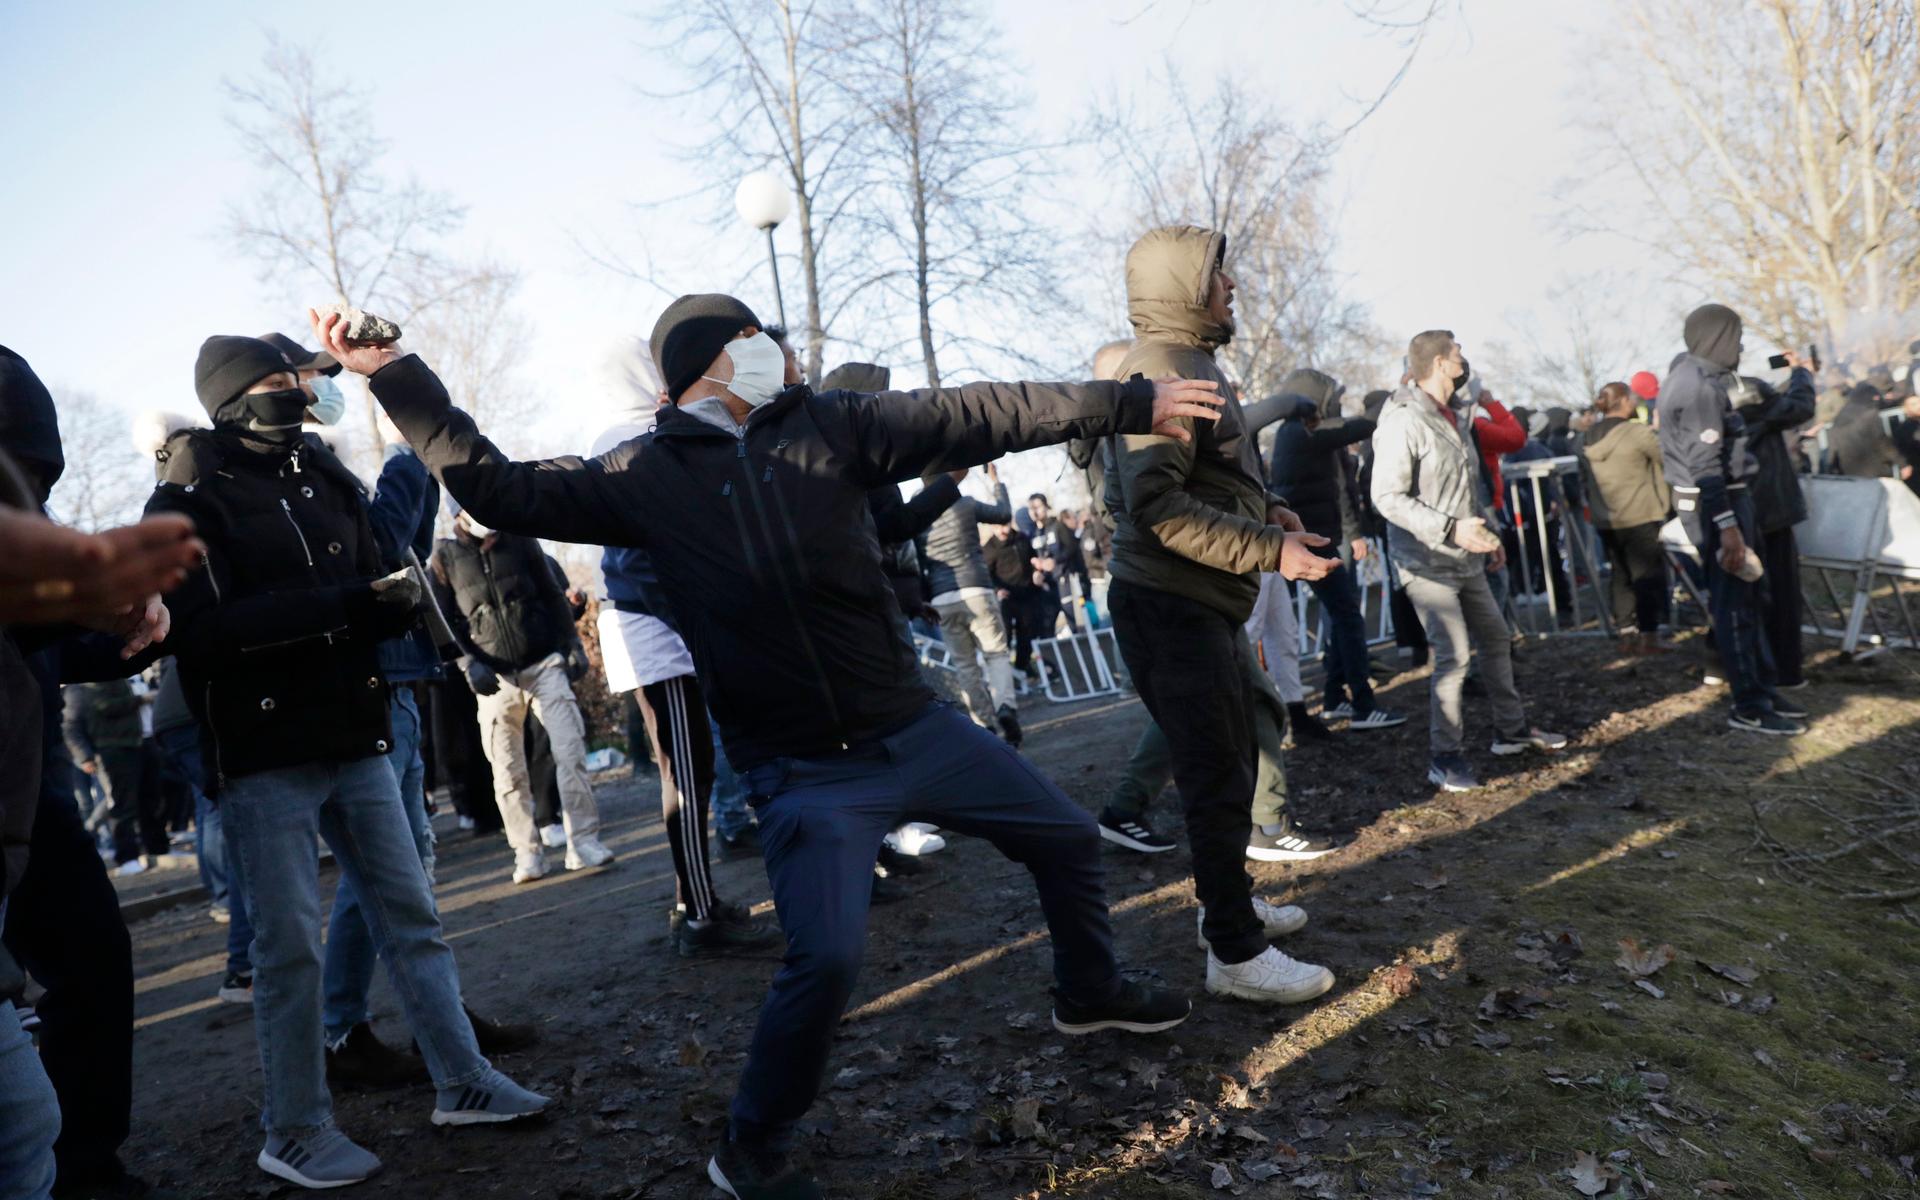 Motdemonstranter kastar sten i Sveaparken i Örebro, där Rasmus Paludan, partiledare för det danska högerextrema partiet Stram kurs, har fått tillstånd för en sammankomst på långfredagen. 